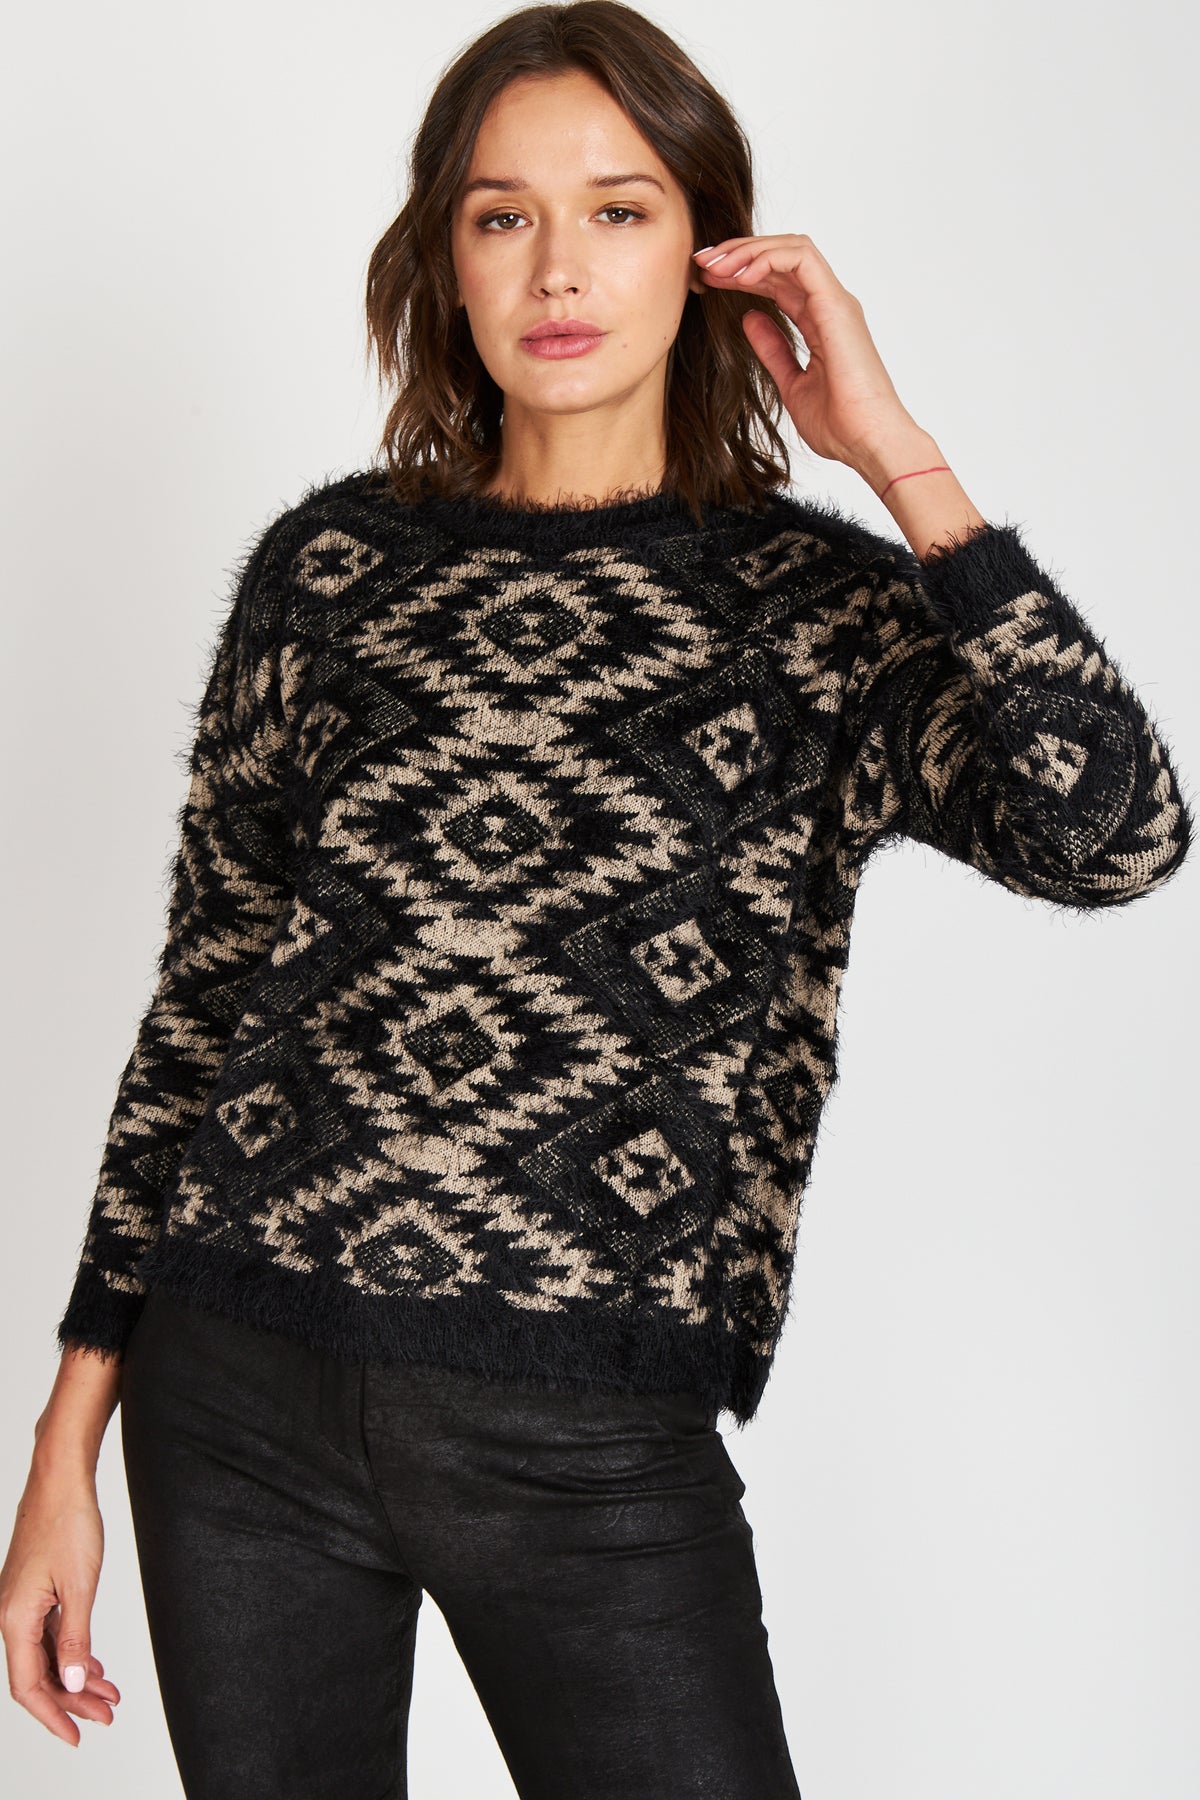 Sweater Rapsodia  Navita Negro